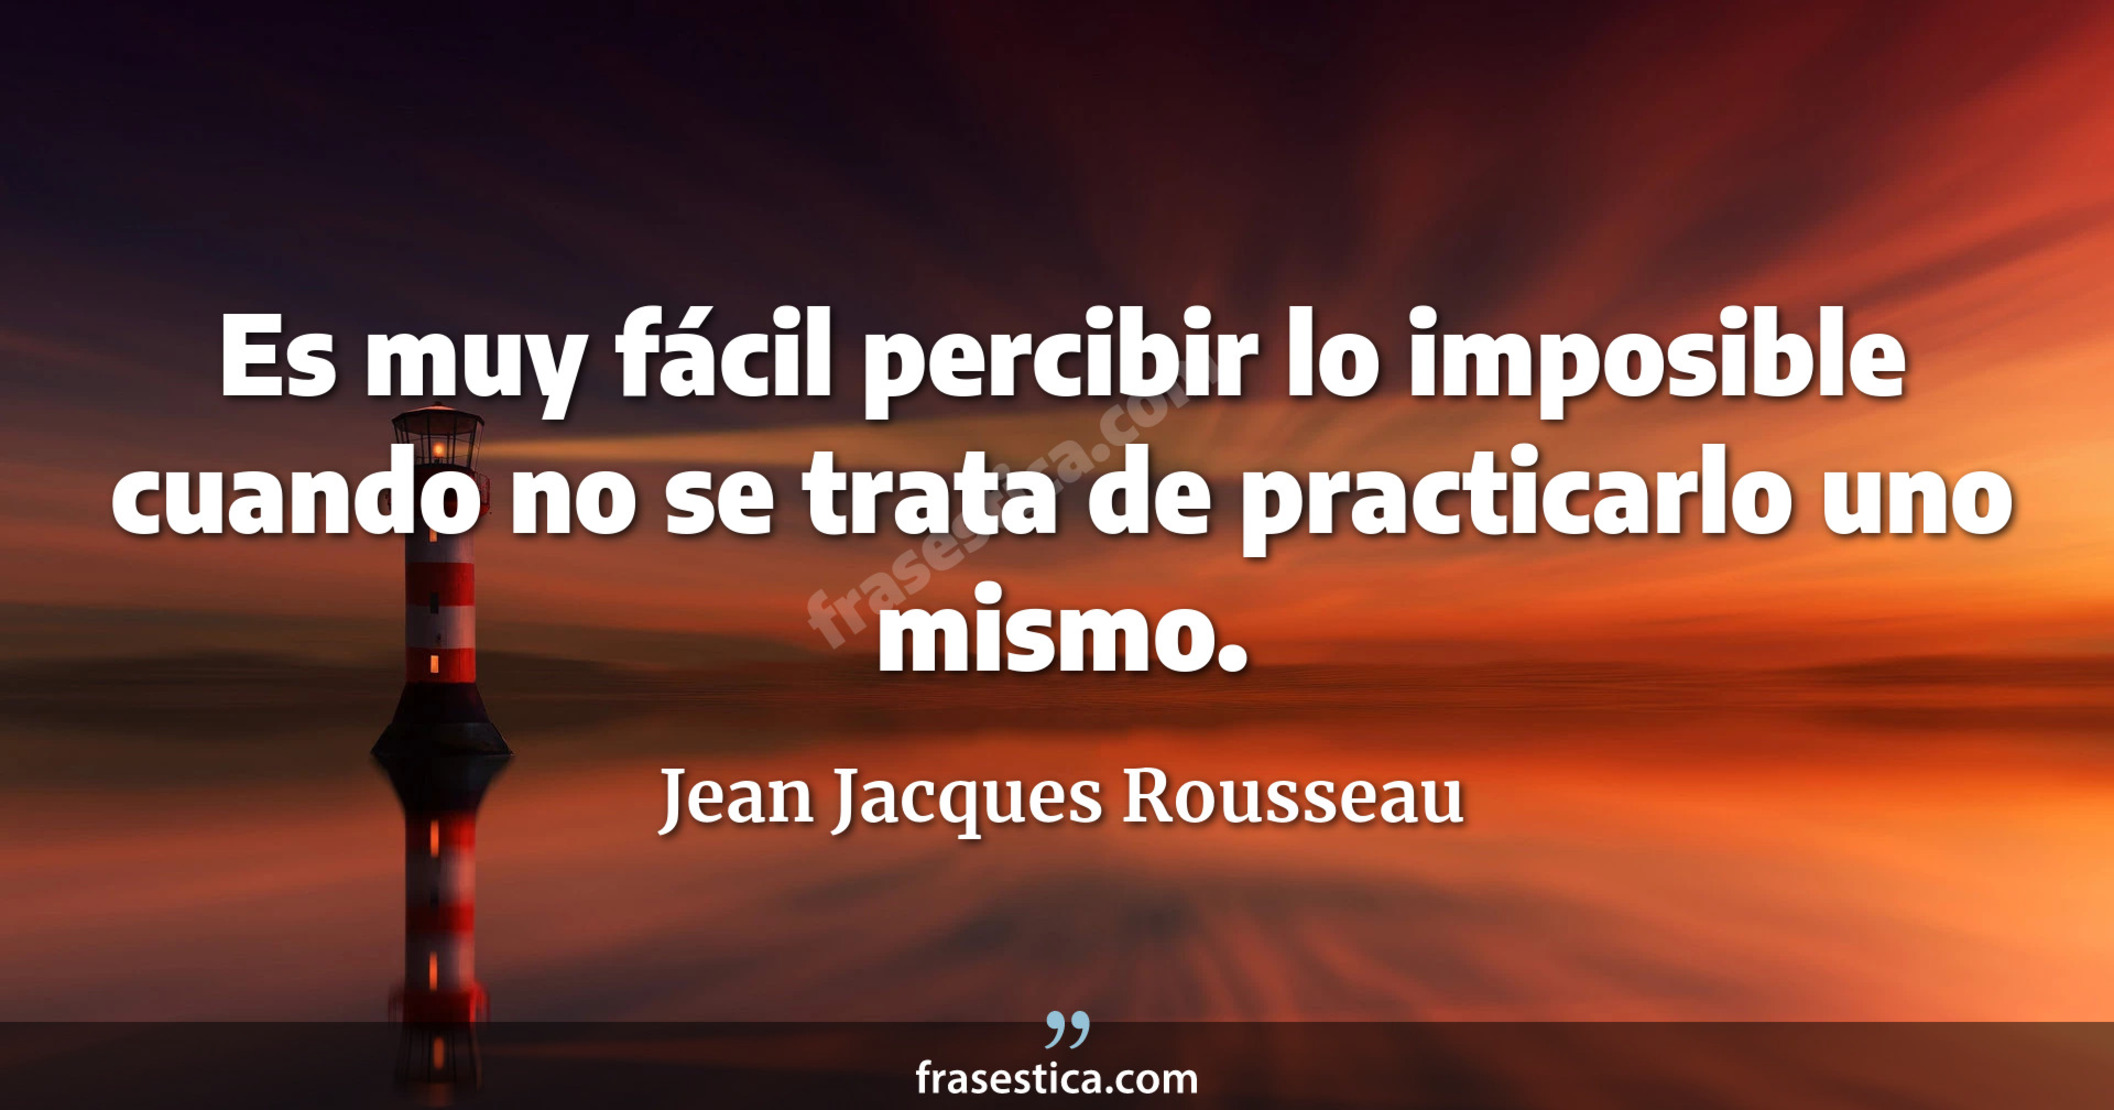 Es muy fácil percibir lo imposible cuando no se trata de practicarlo uno mismo. - Jean Jacques Rousseau